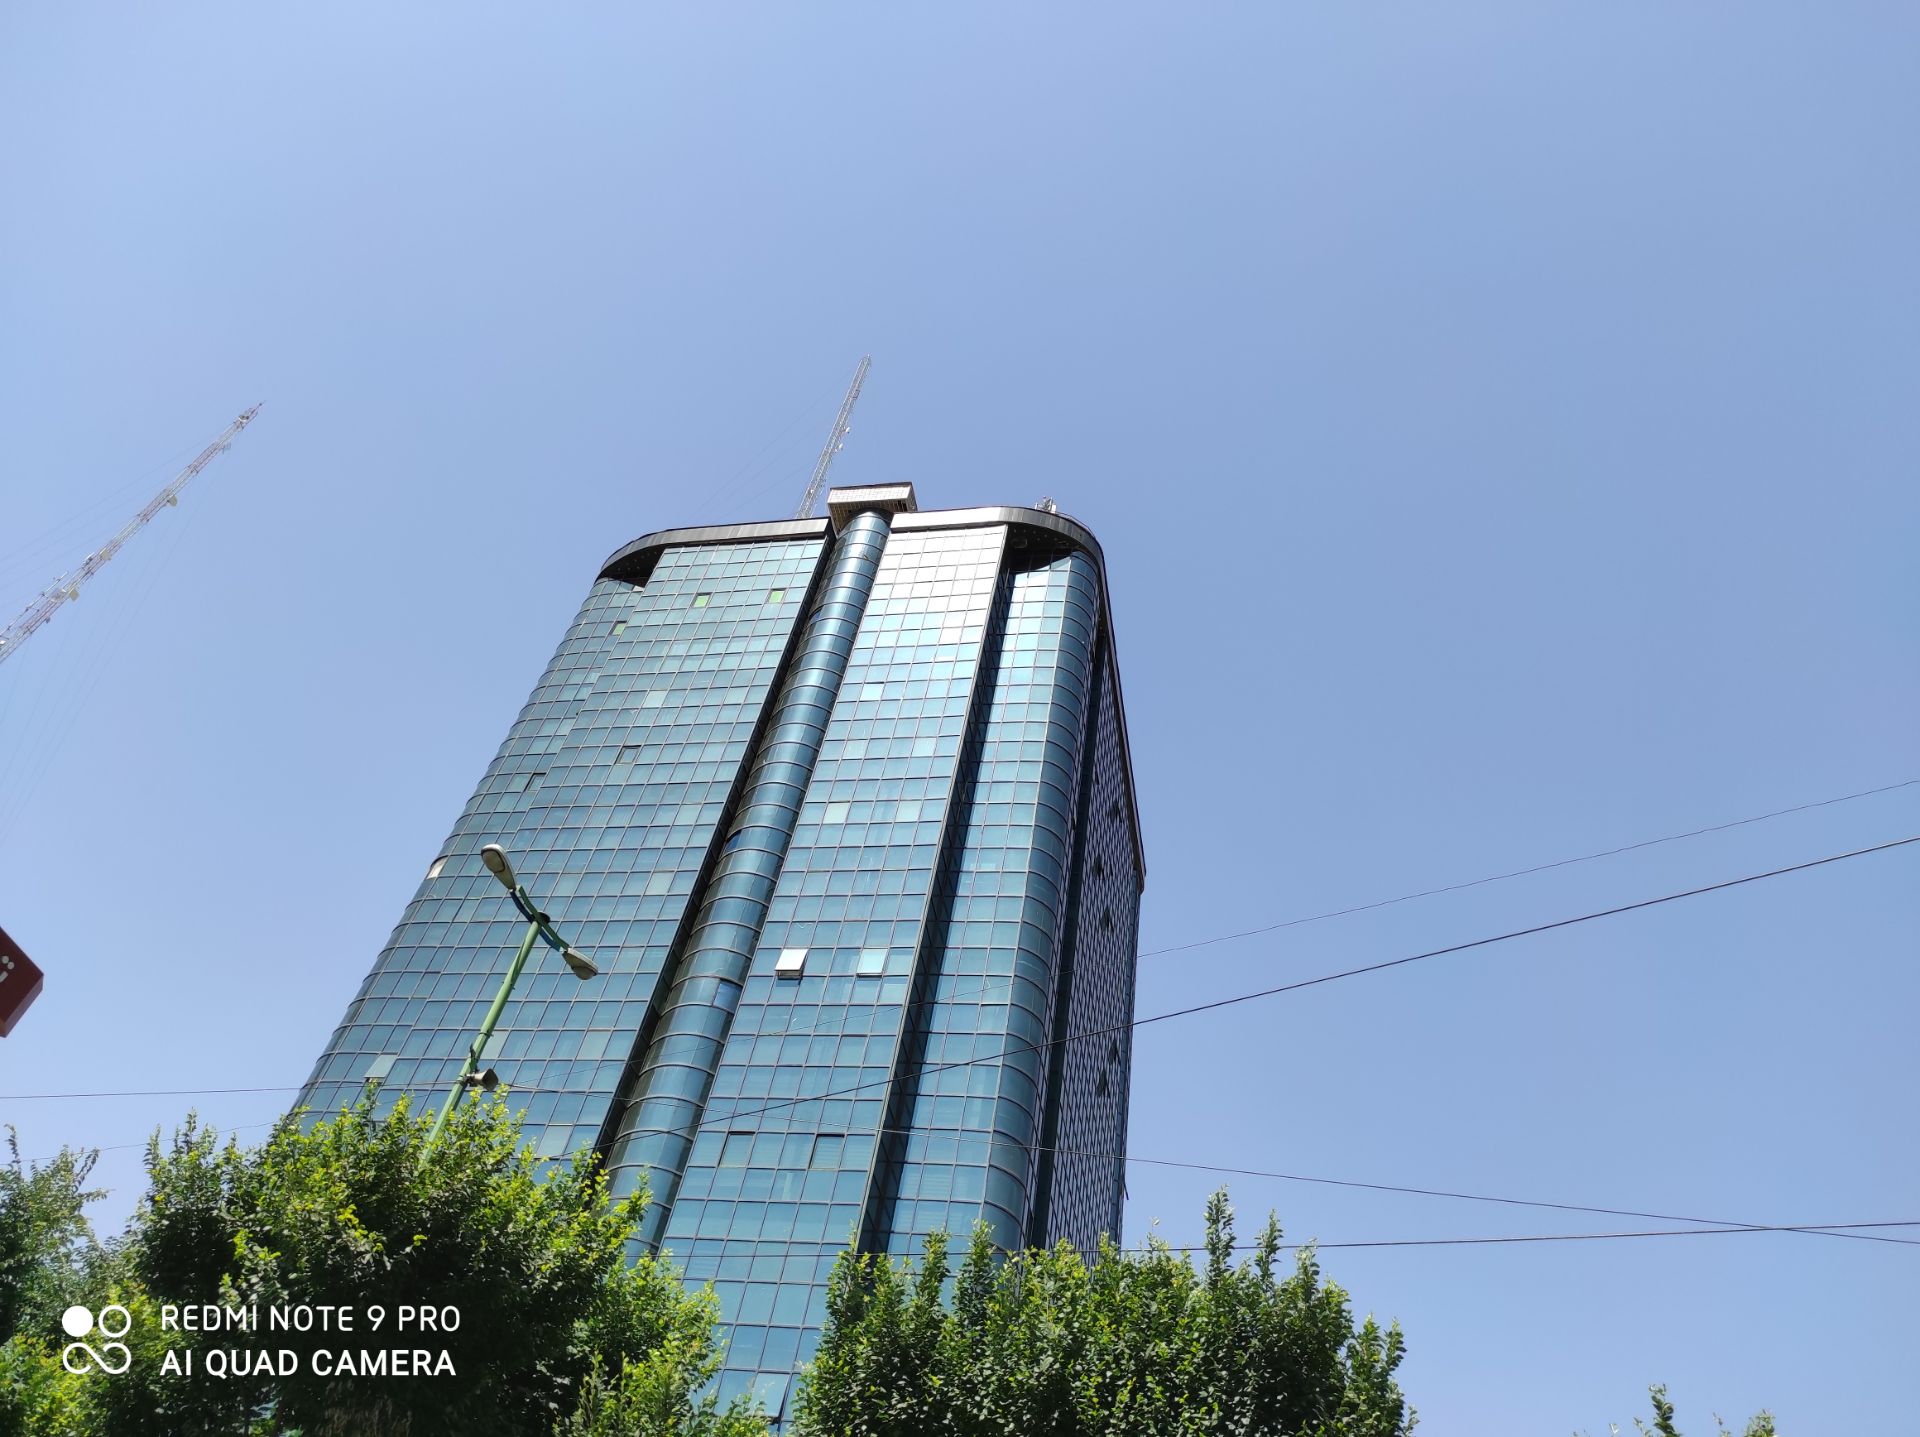 نمونه عکس ردمی نوت 9 پرو - نمای ساختمان بلند